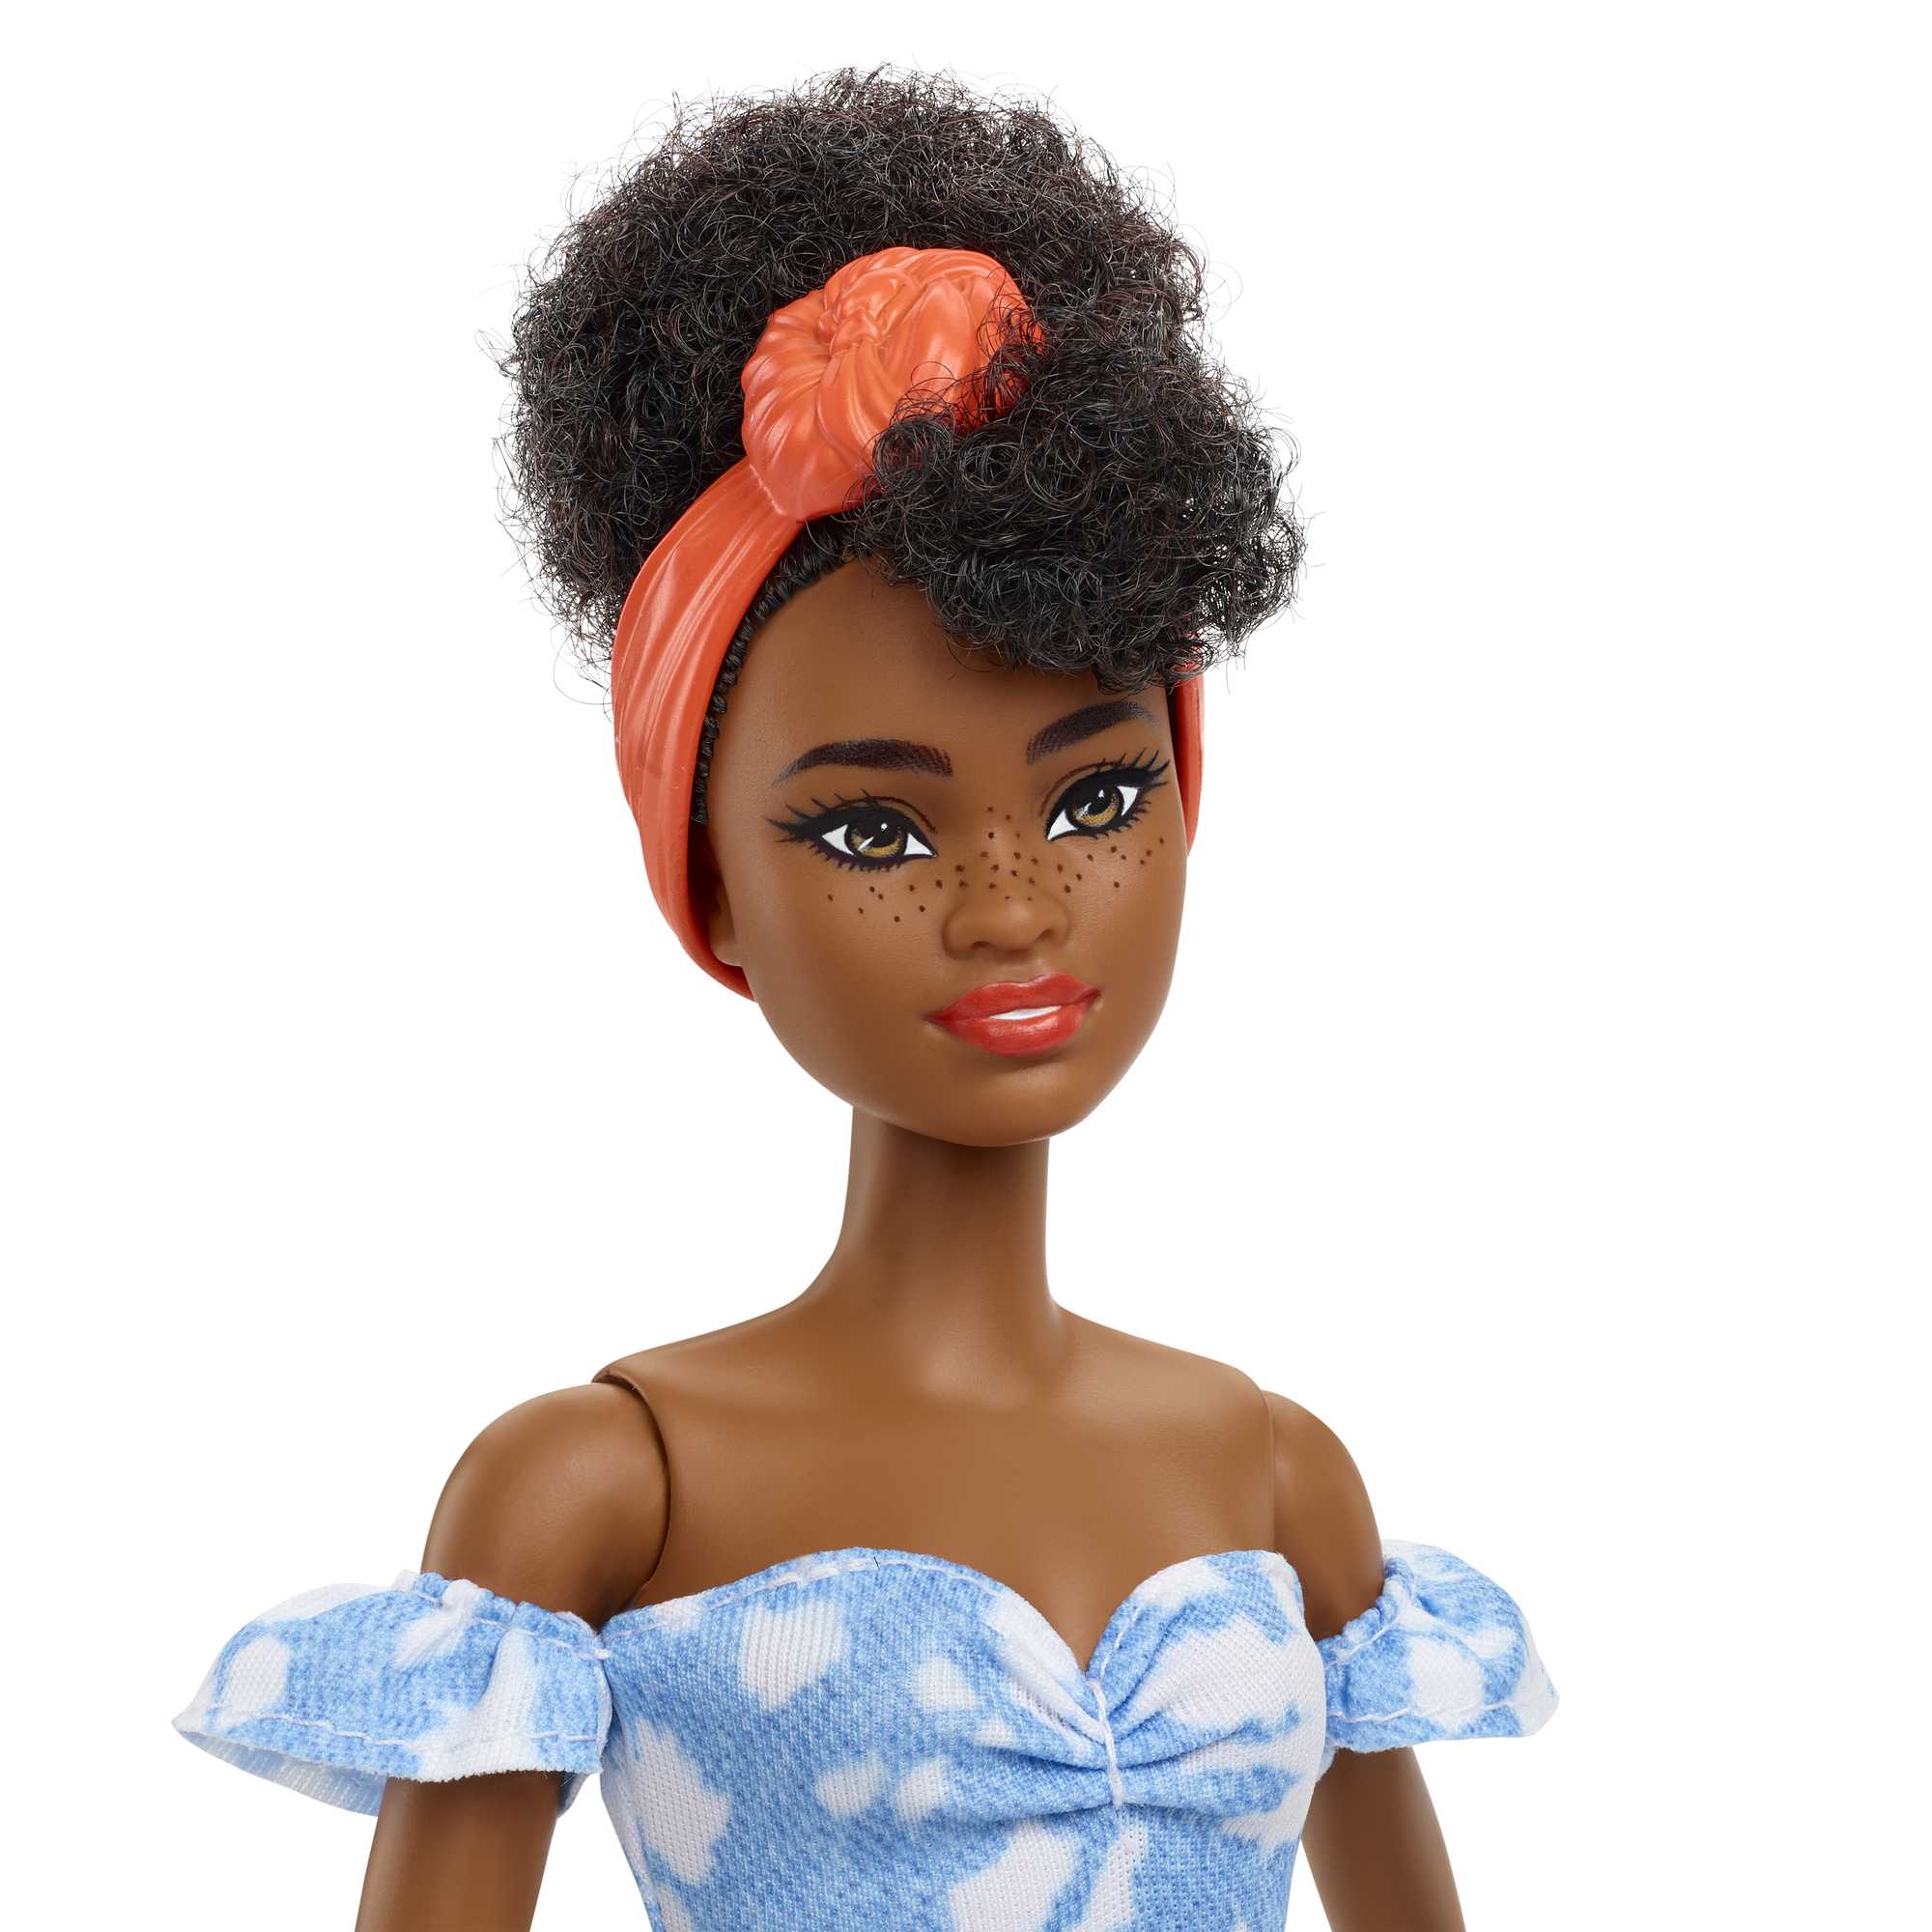 Barbie Supplémentaire Poupée métisse femme avec des cheveux noirs e